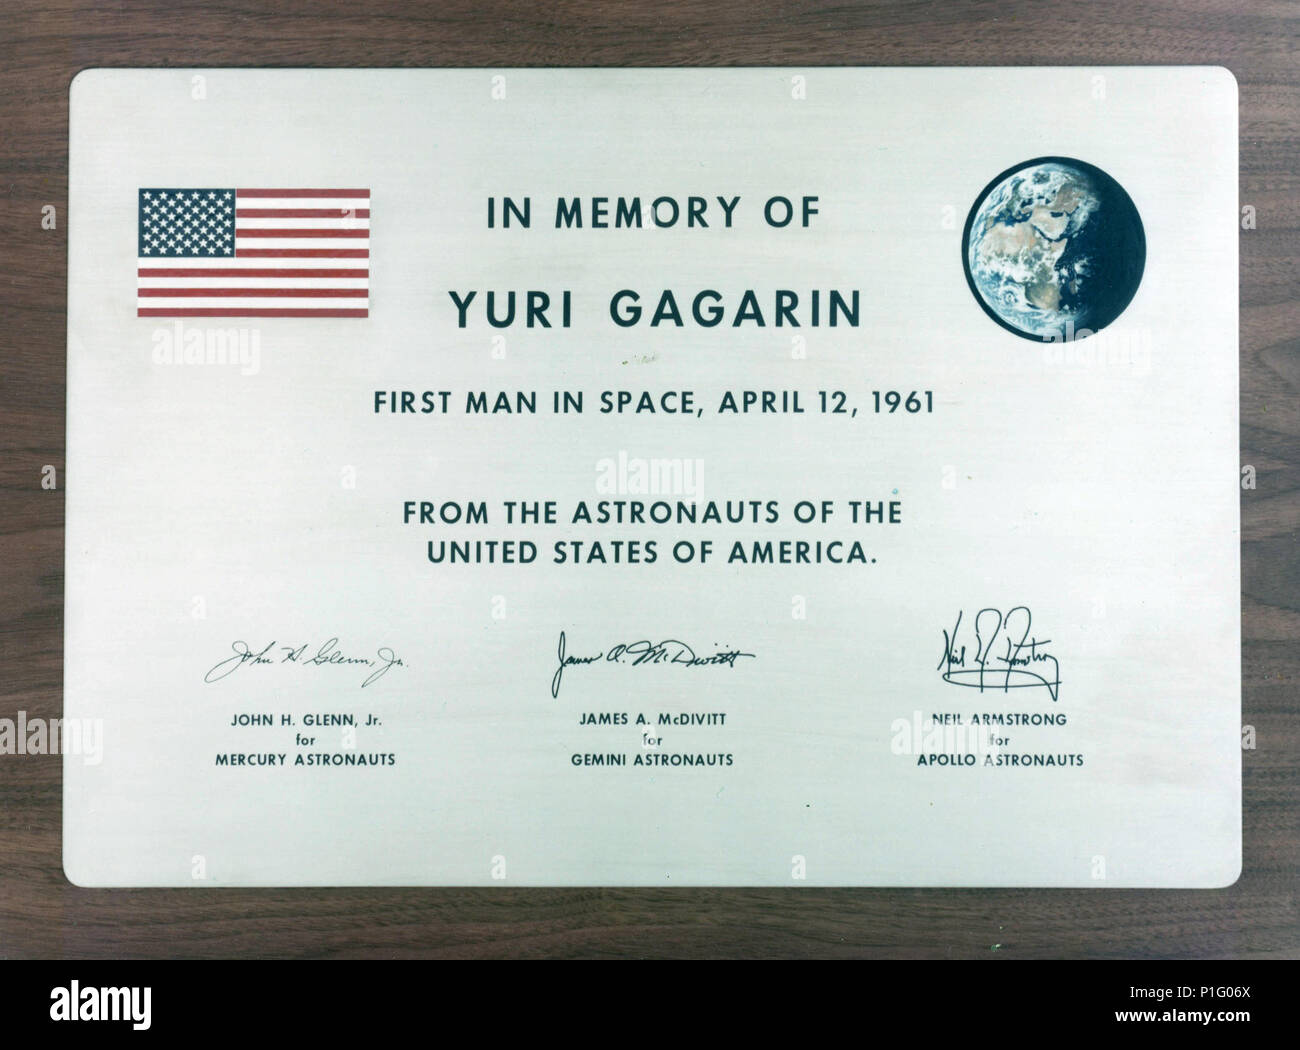 Dr. George M. Niedrig, der Administrator der NASA, vorgelegt der UDSSR am 21. Januar 1971 eine Gedenktafel in Erinnerung an den sowjetischen Kosmonauten Juri Gagarin, der erste Flug in den Weltraum am 12. April 1961. Stockfoto